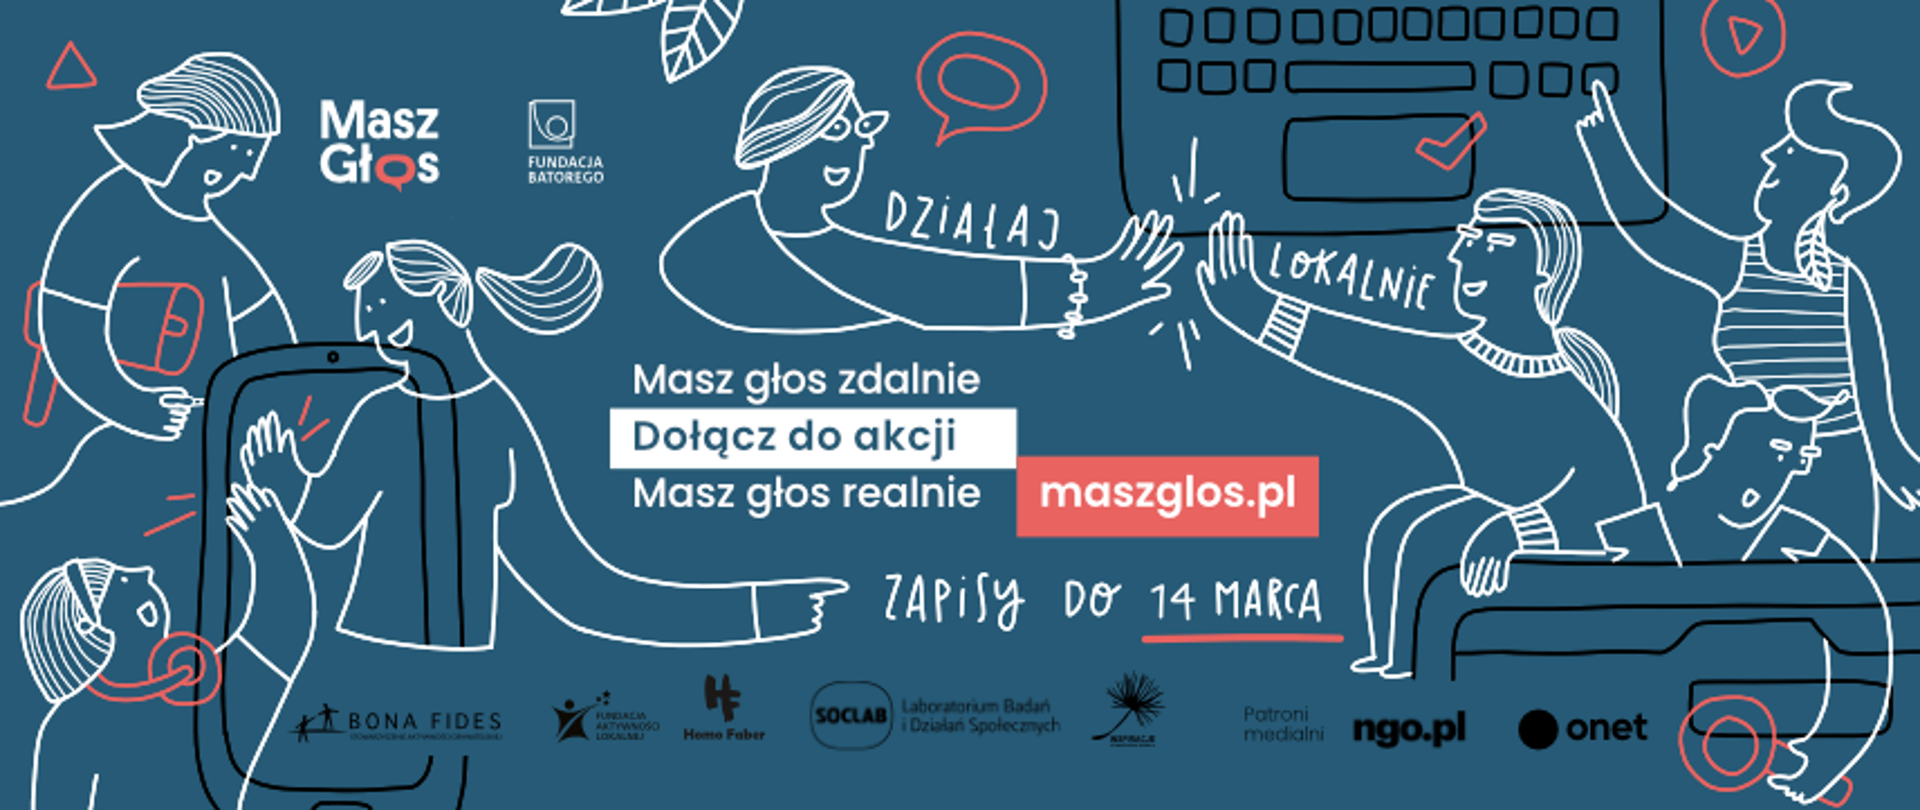 grafika przedstawia logotyp akcji Masz Głos!, z napisem: Masz głos zdalnie Dołącz do akcji Masz głos realnie maszglos.pl